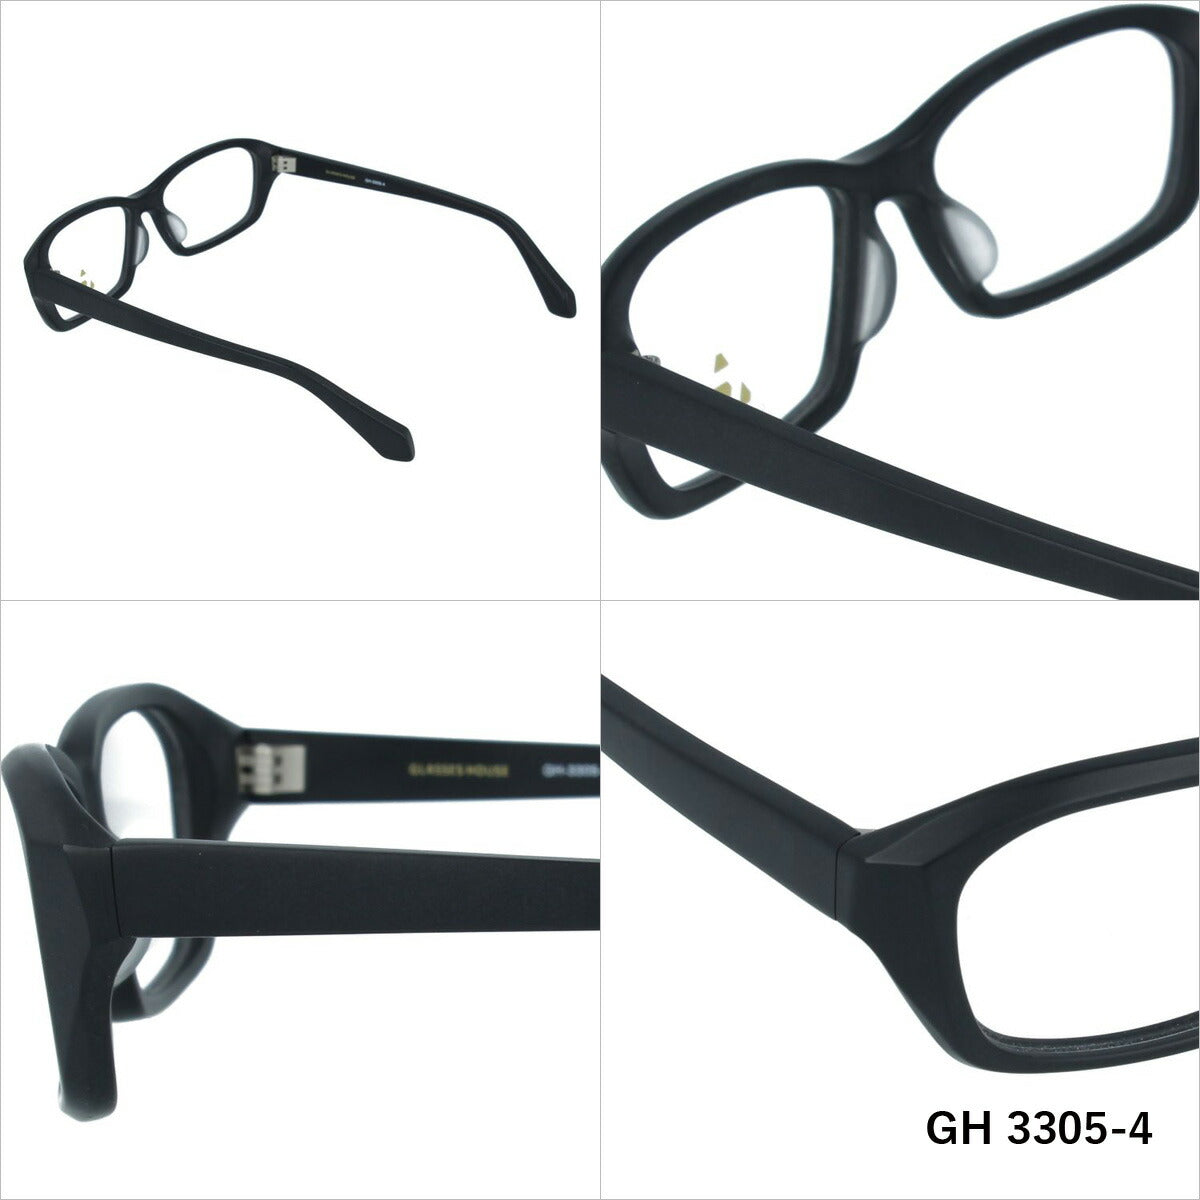 グラスハウス メガネ 眼鏡 フレーム 度付き 伊達 カラーレンズ メンズ レディース ブランド GH 3305 53 スクエア | 老眼鏡 PCレンズ ブルーライトカット 遠近両用 対応可能 紫外線 対策 おすすめ 人気 プレゼント